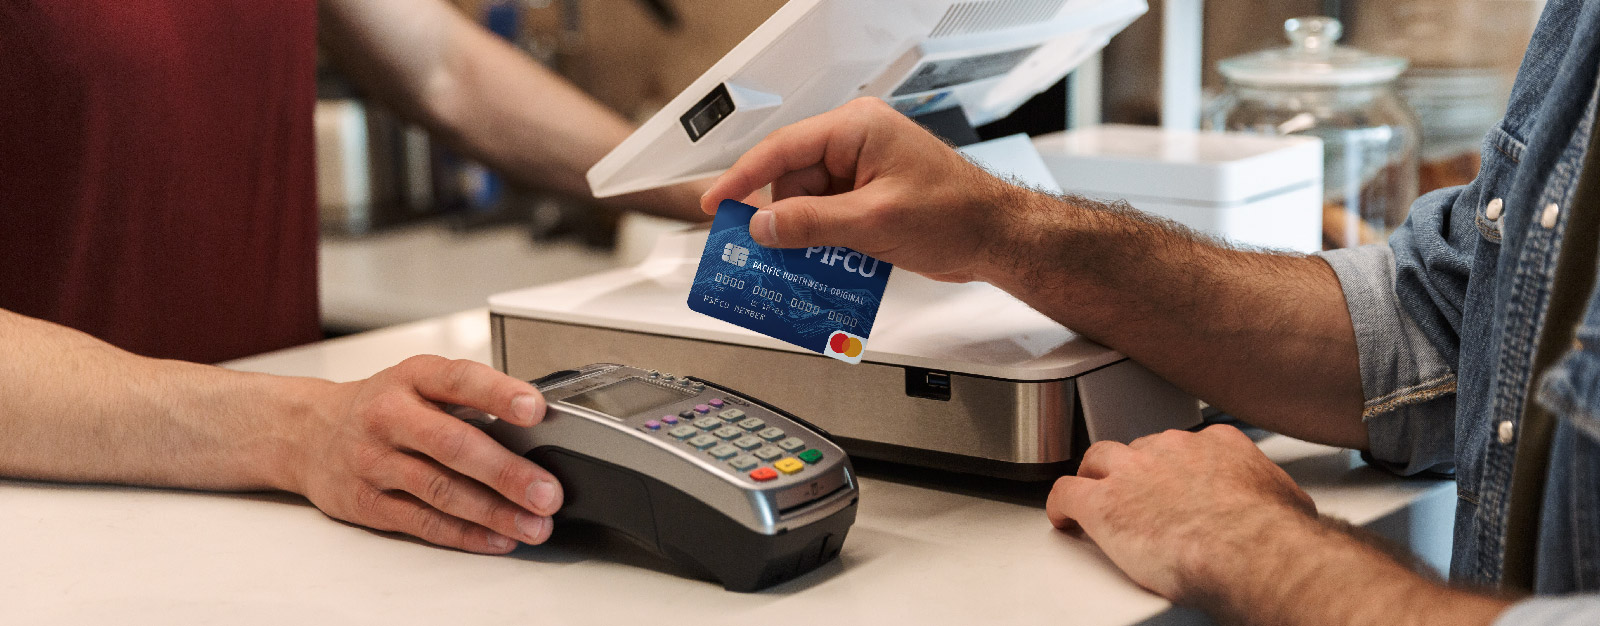 Person swiping P1FCU card in merchant machine